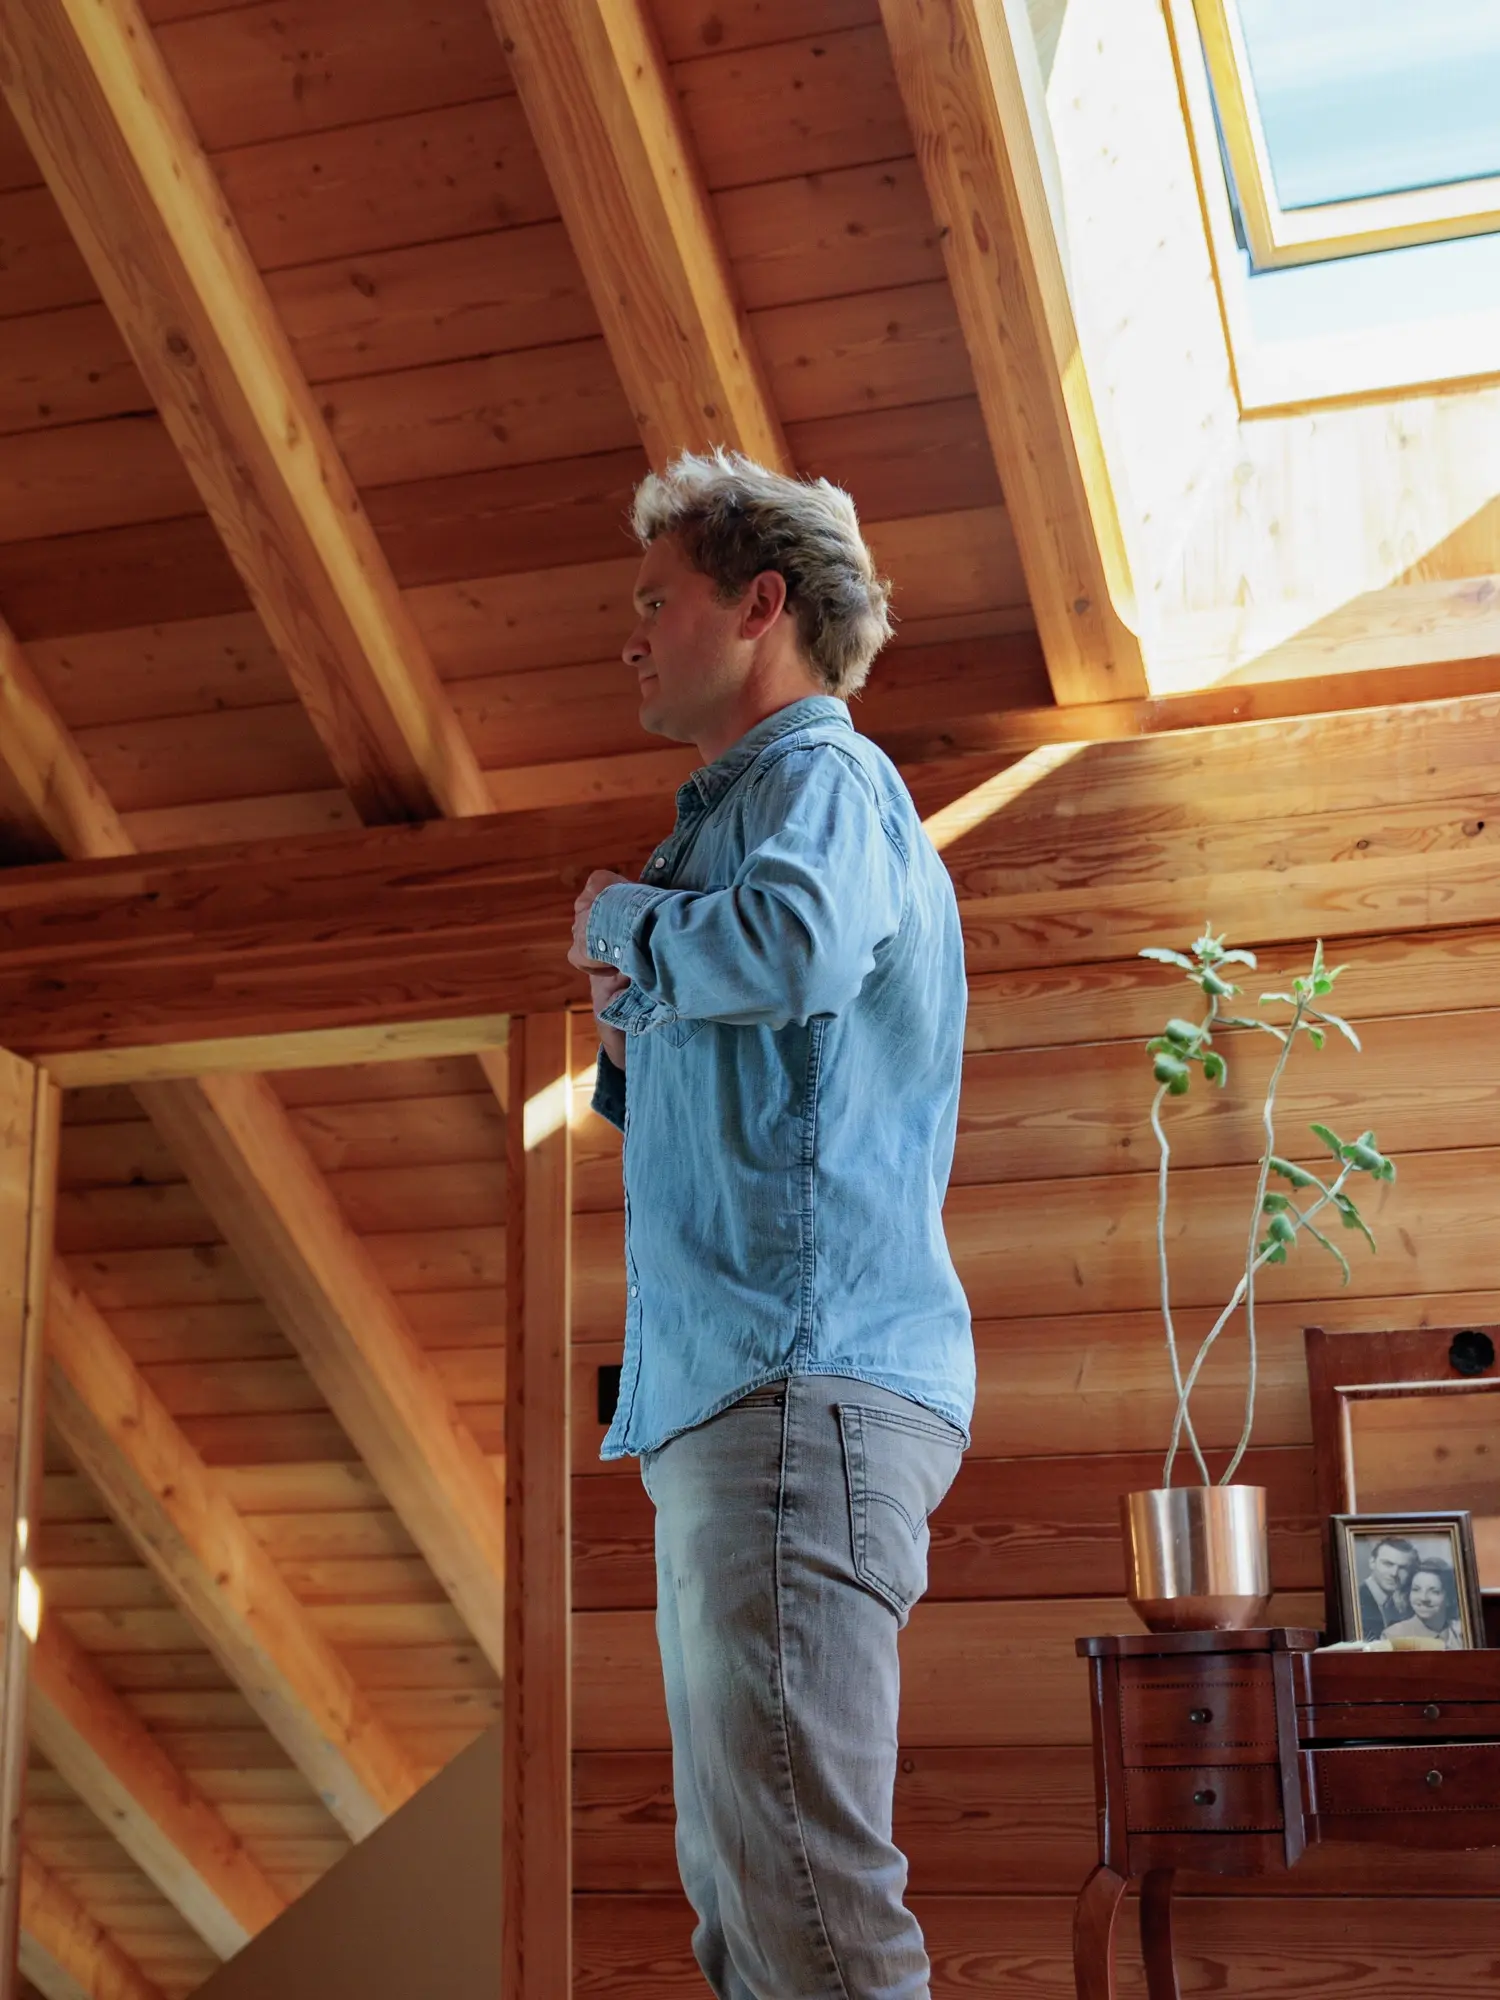 Jean Philippe debout dans un intérieur chaleureux avec des murs et un plafond en bois, près d'une fenêtre de toit qui offre une isolation efficace, ainsi qu'une abondance de lumière naturelle et d'air frais.